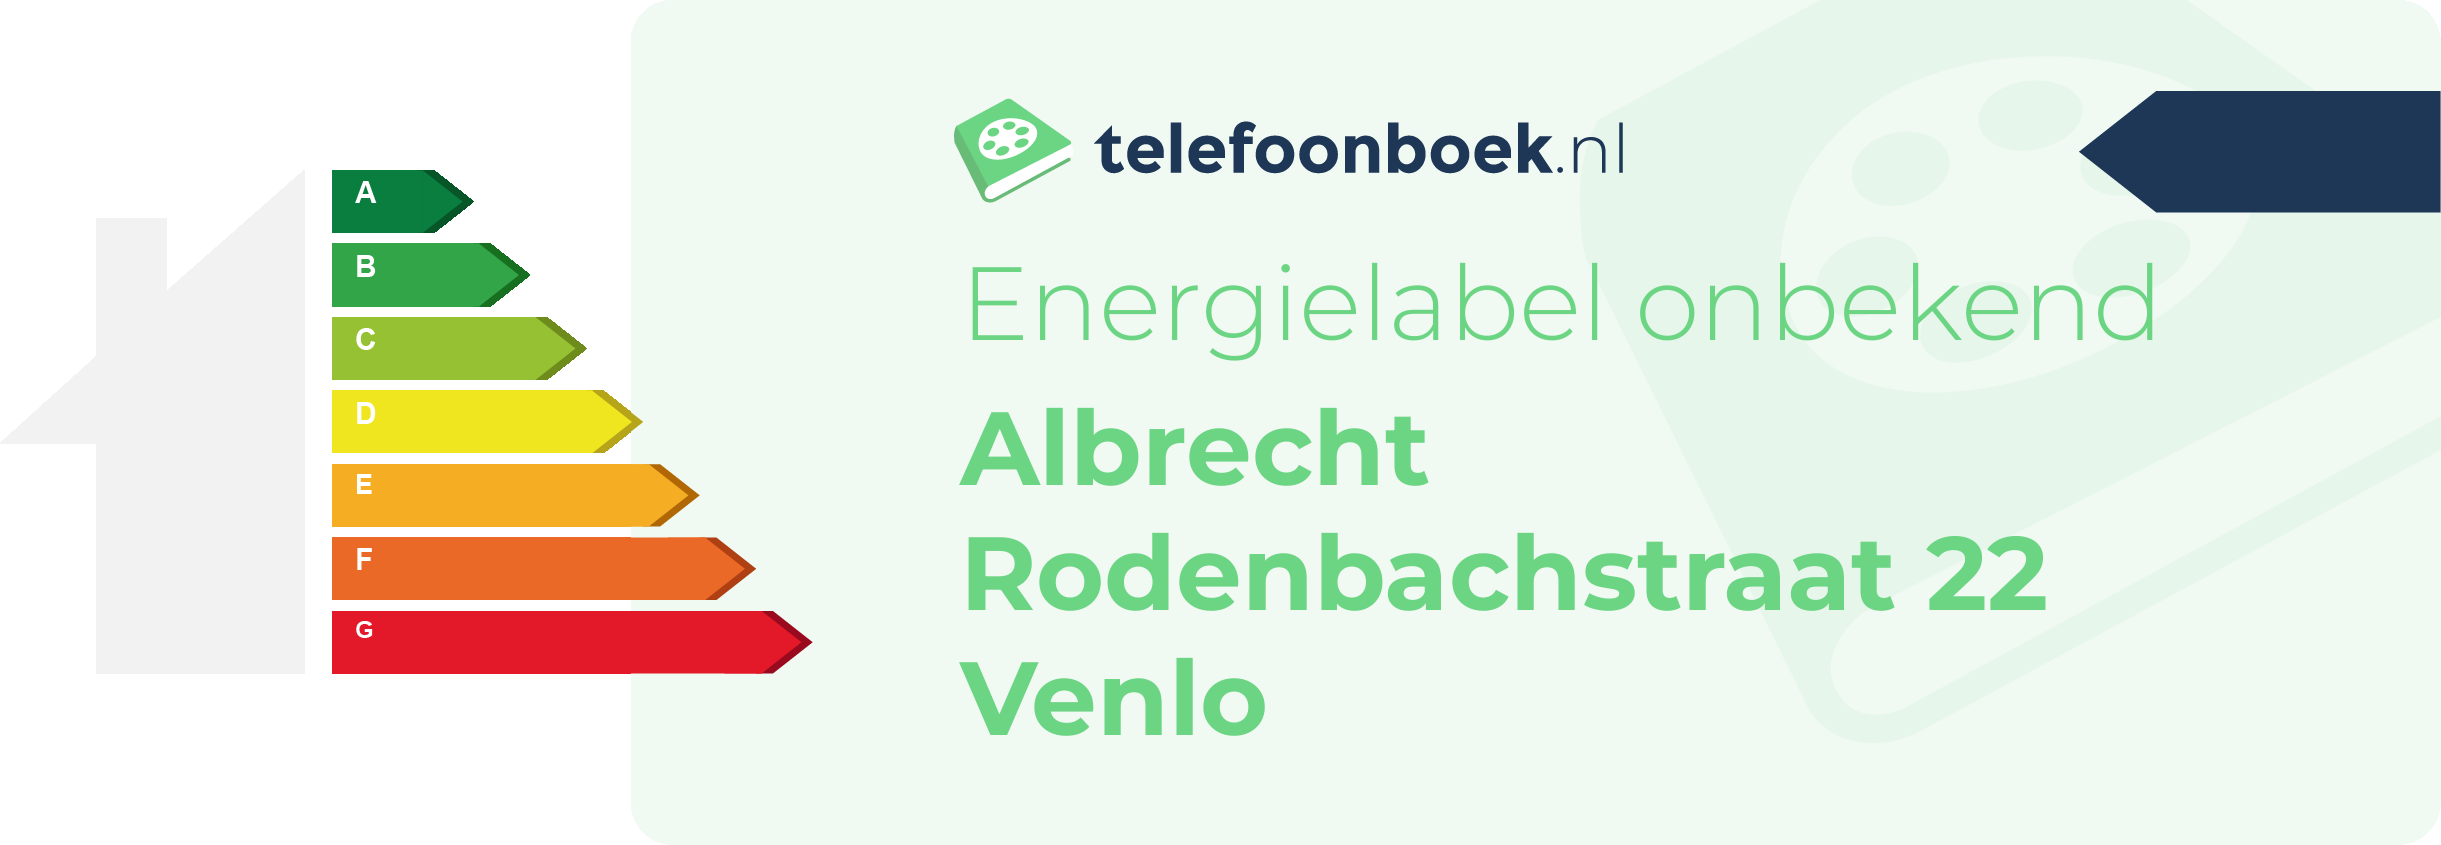 Energielabel Albrecht Rodenbachstraat 22 Venlo